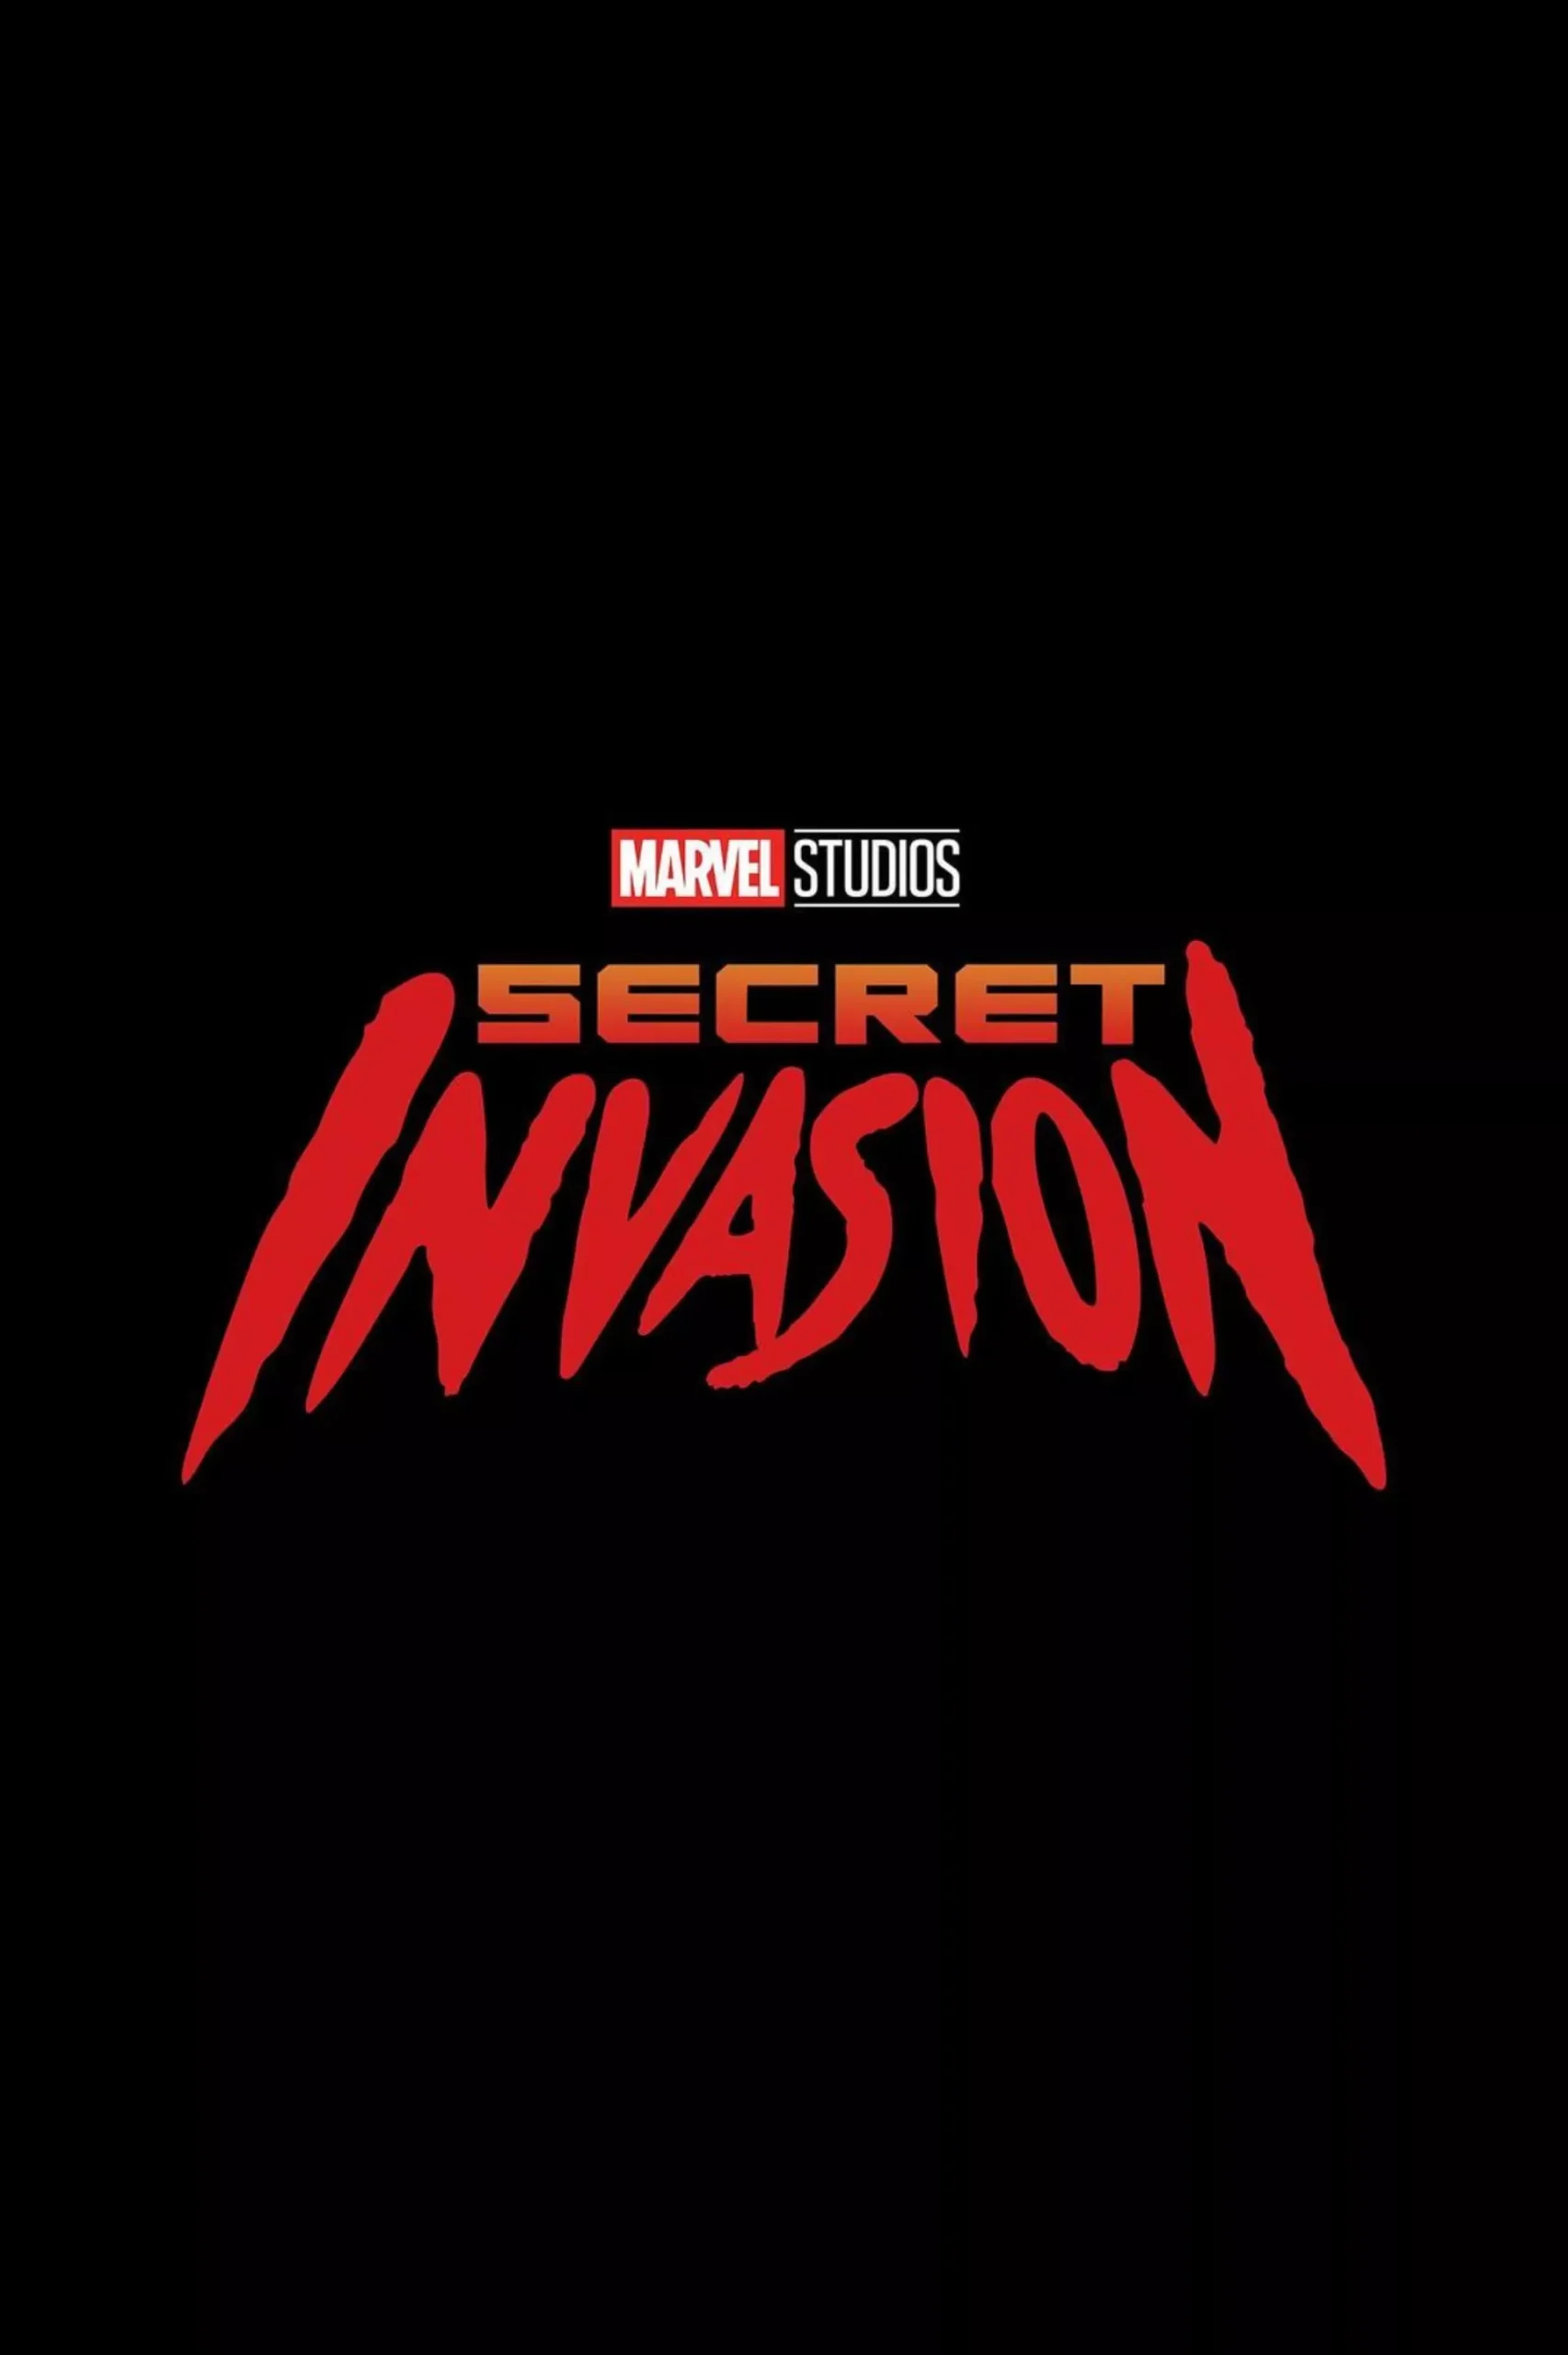 Trailer Από Τη Νέα Σειρά "Secret Invasion"